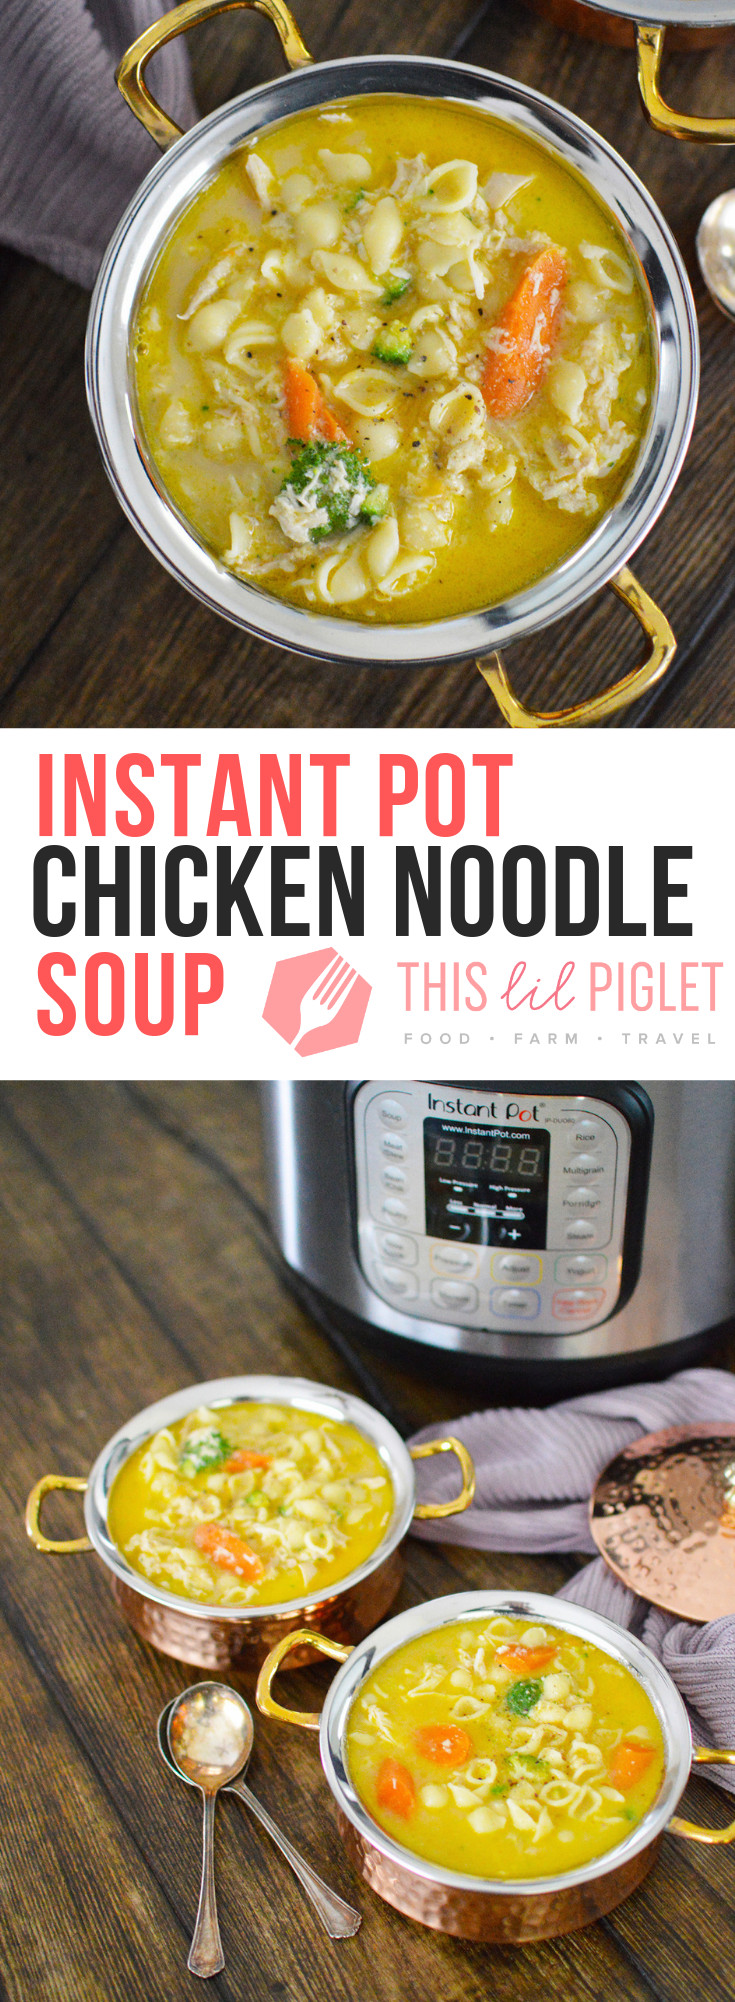 Whole Chicken Soup Instant Pot
 Instant Pot Whole Chicken Noodle Soup This Lil Piglet